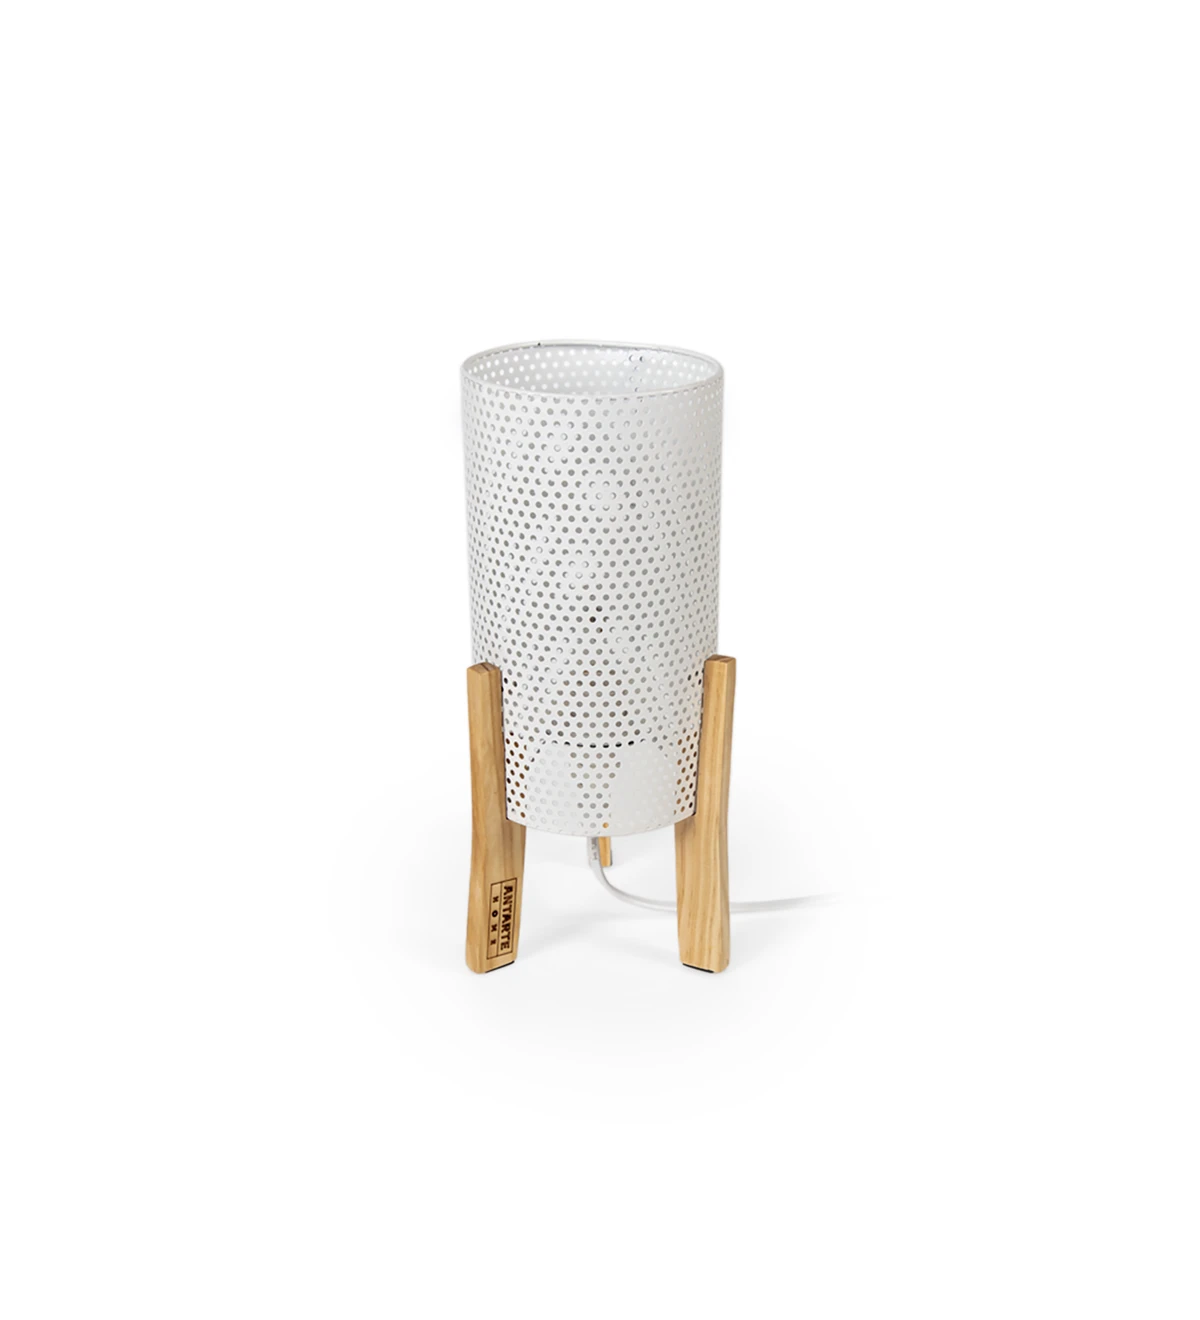  Lampe de table en métal blanc et support en bois.